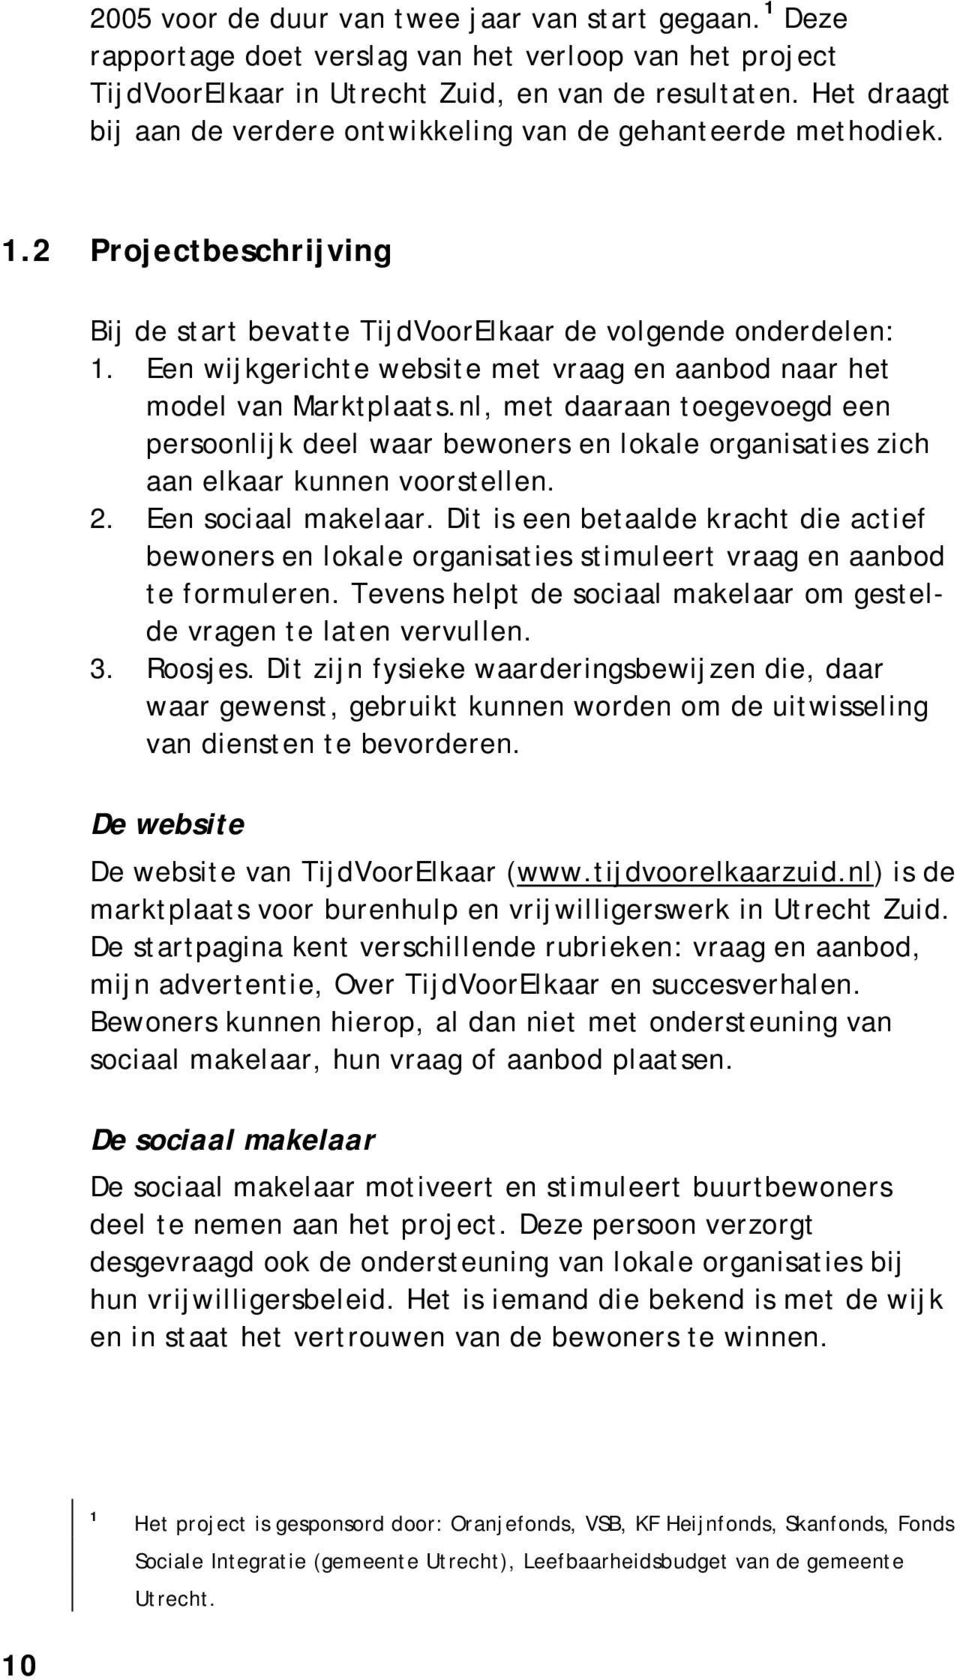 Een wijkgerichte website met vraag en aanbod naar het model van Marktplaats.nl, met daaraan toegevoegd een persoonlijk deel waar bewoners en lokale organisaties zich aan elkaar kunnen voorstellen. 2.